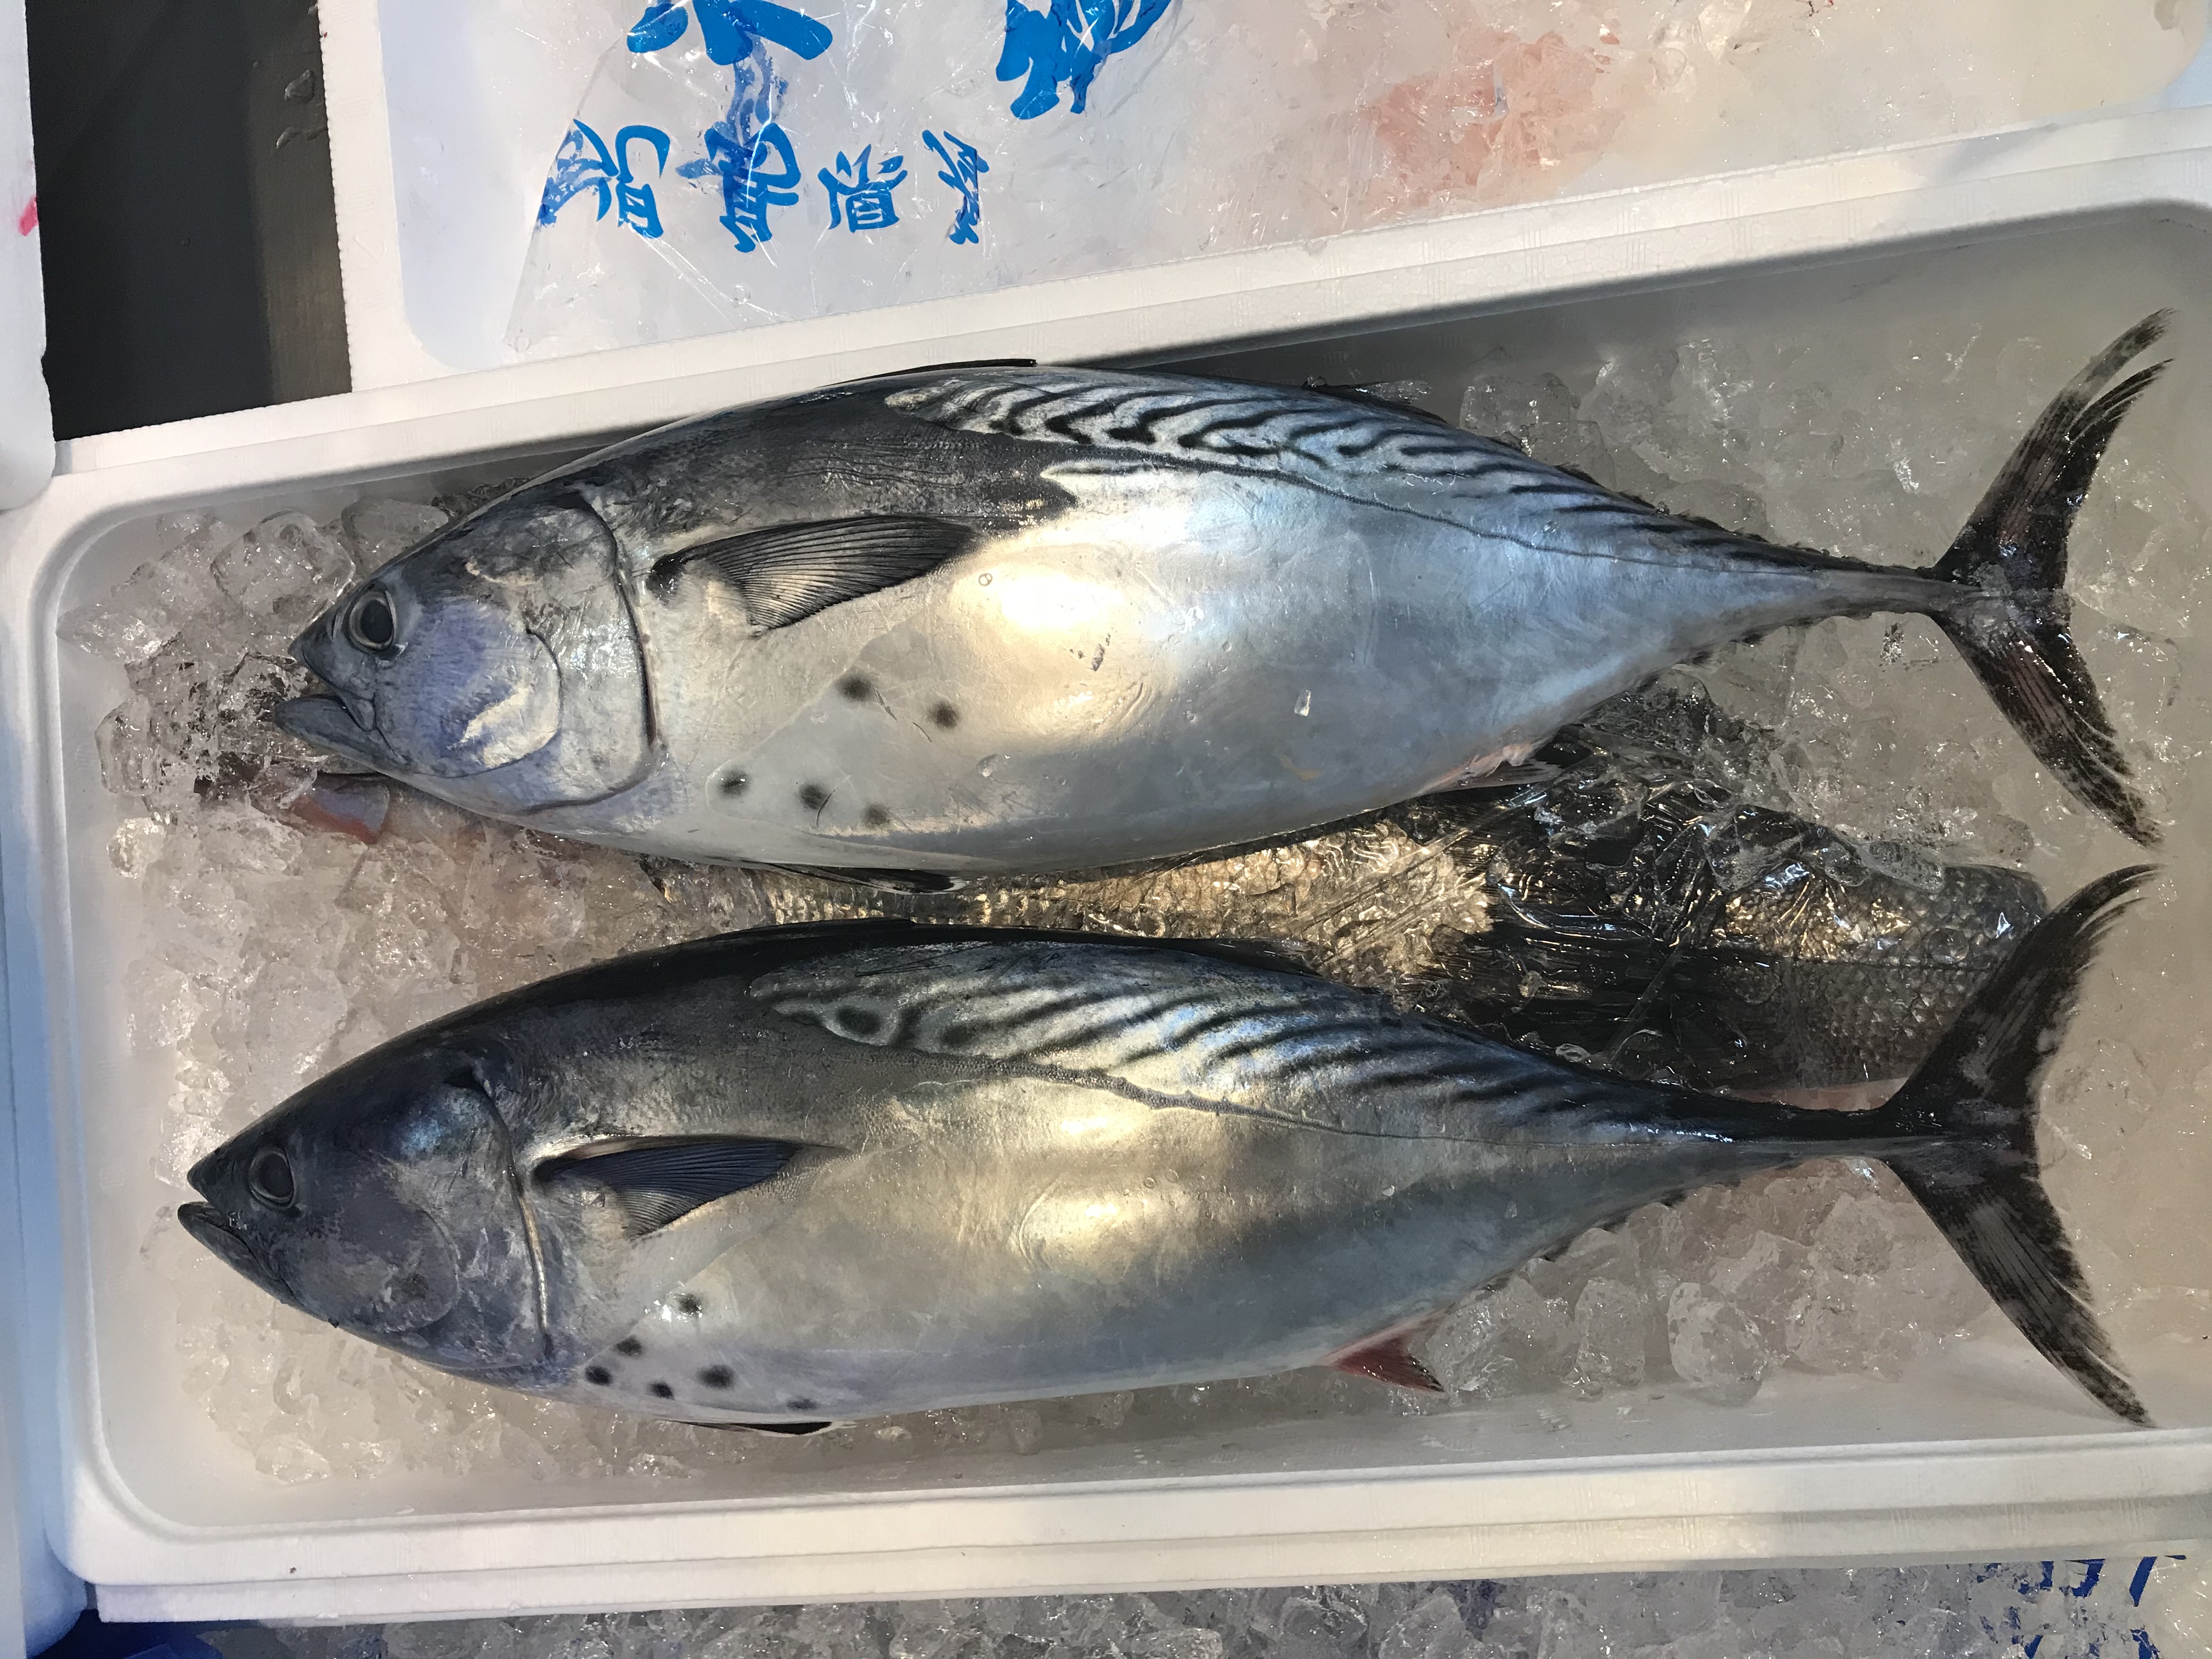 カツオの種類 背びれを出せば スピード重視で泳げる秘密がわかる 魚食普及推進センター 一般社団法人 大日本水産会